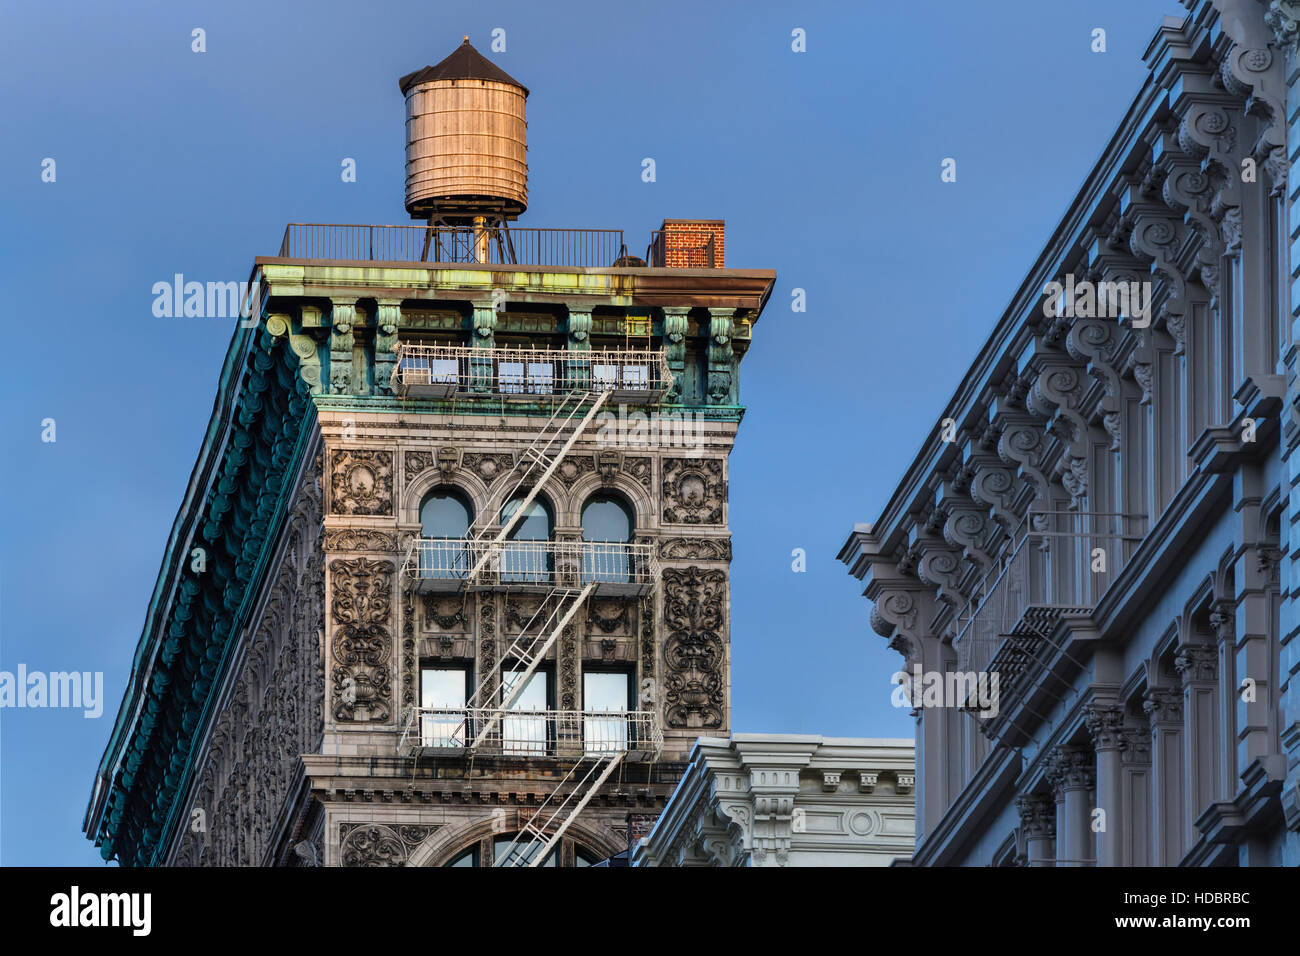 Soho-Gebäude mit Terra Cotta Verzierung, Gesims, Feuerleiter und Wasserturm von Abendlicht beleuchtet. New York City Stockfoto